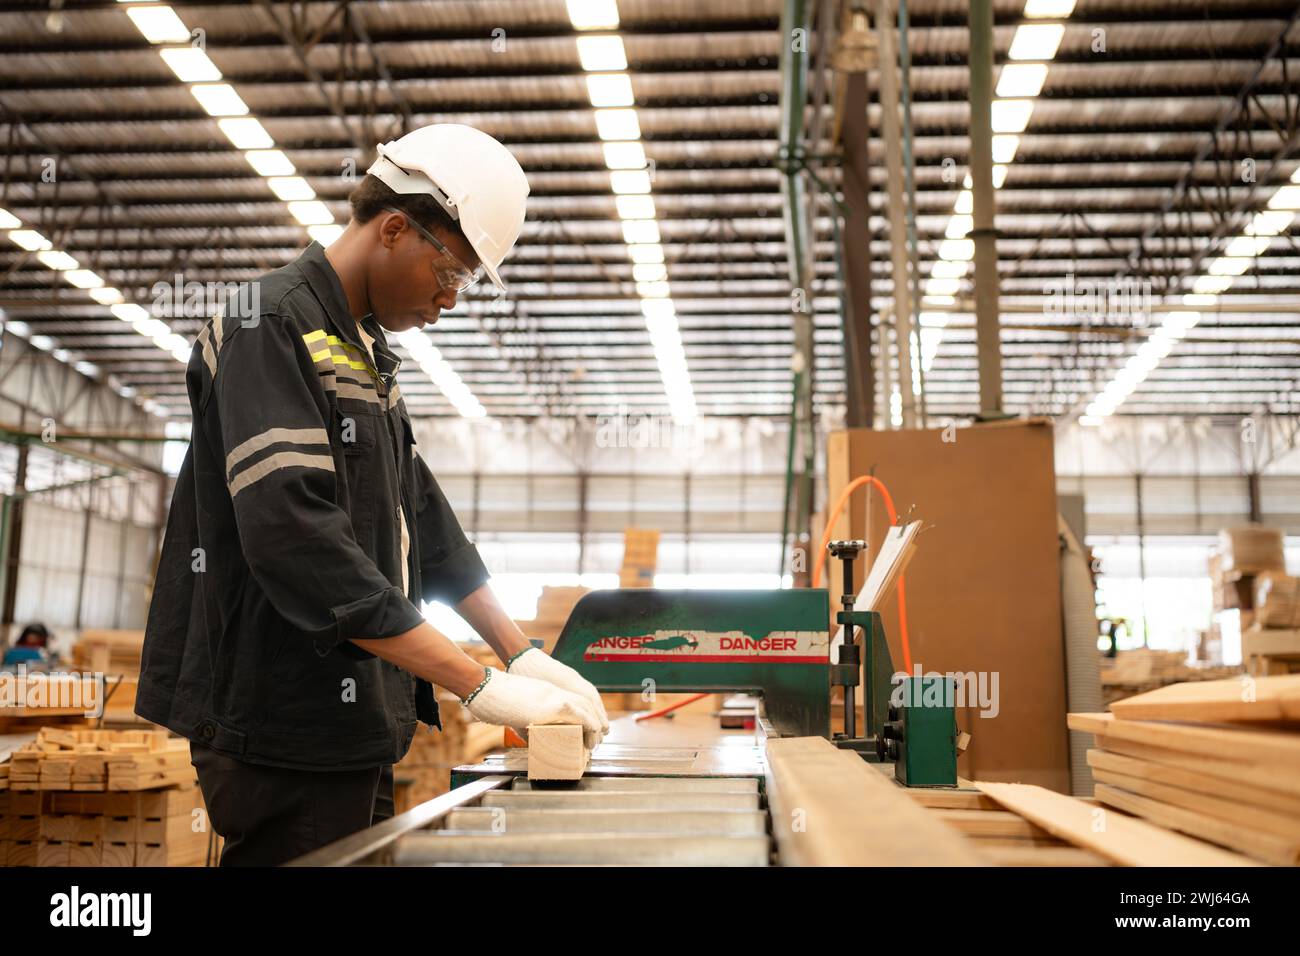 Un giovane lavoratore lavora in una fabbrica di lavorazione del legno, lavorando con macchine per segare e tagliare il legno per produrre lastre di legno per il makin Foto Stock